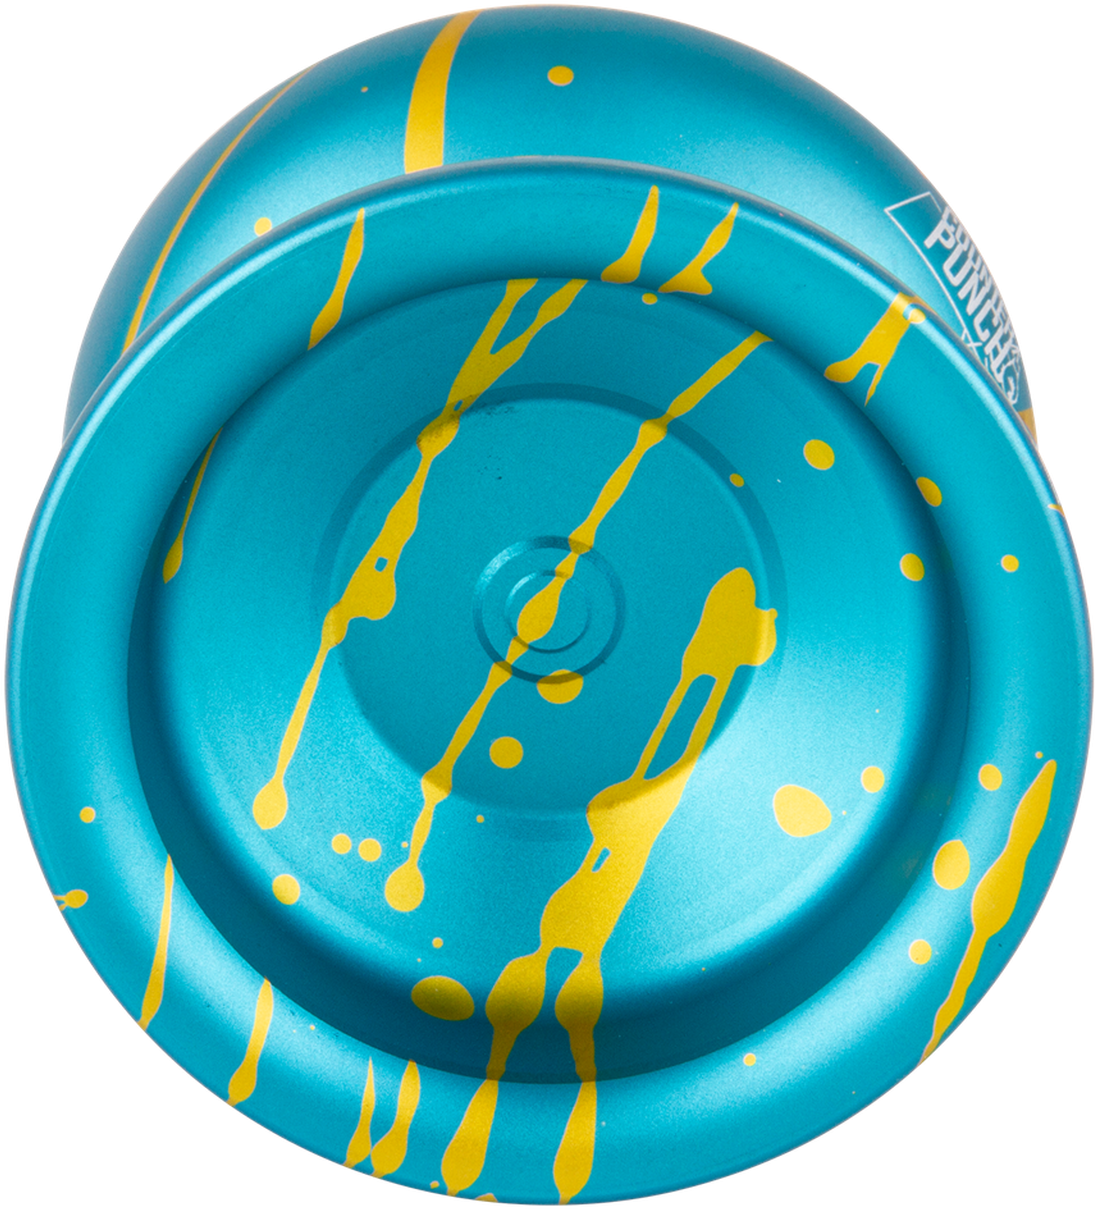 A Blue And Yellow Yo-yo